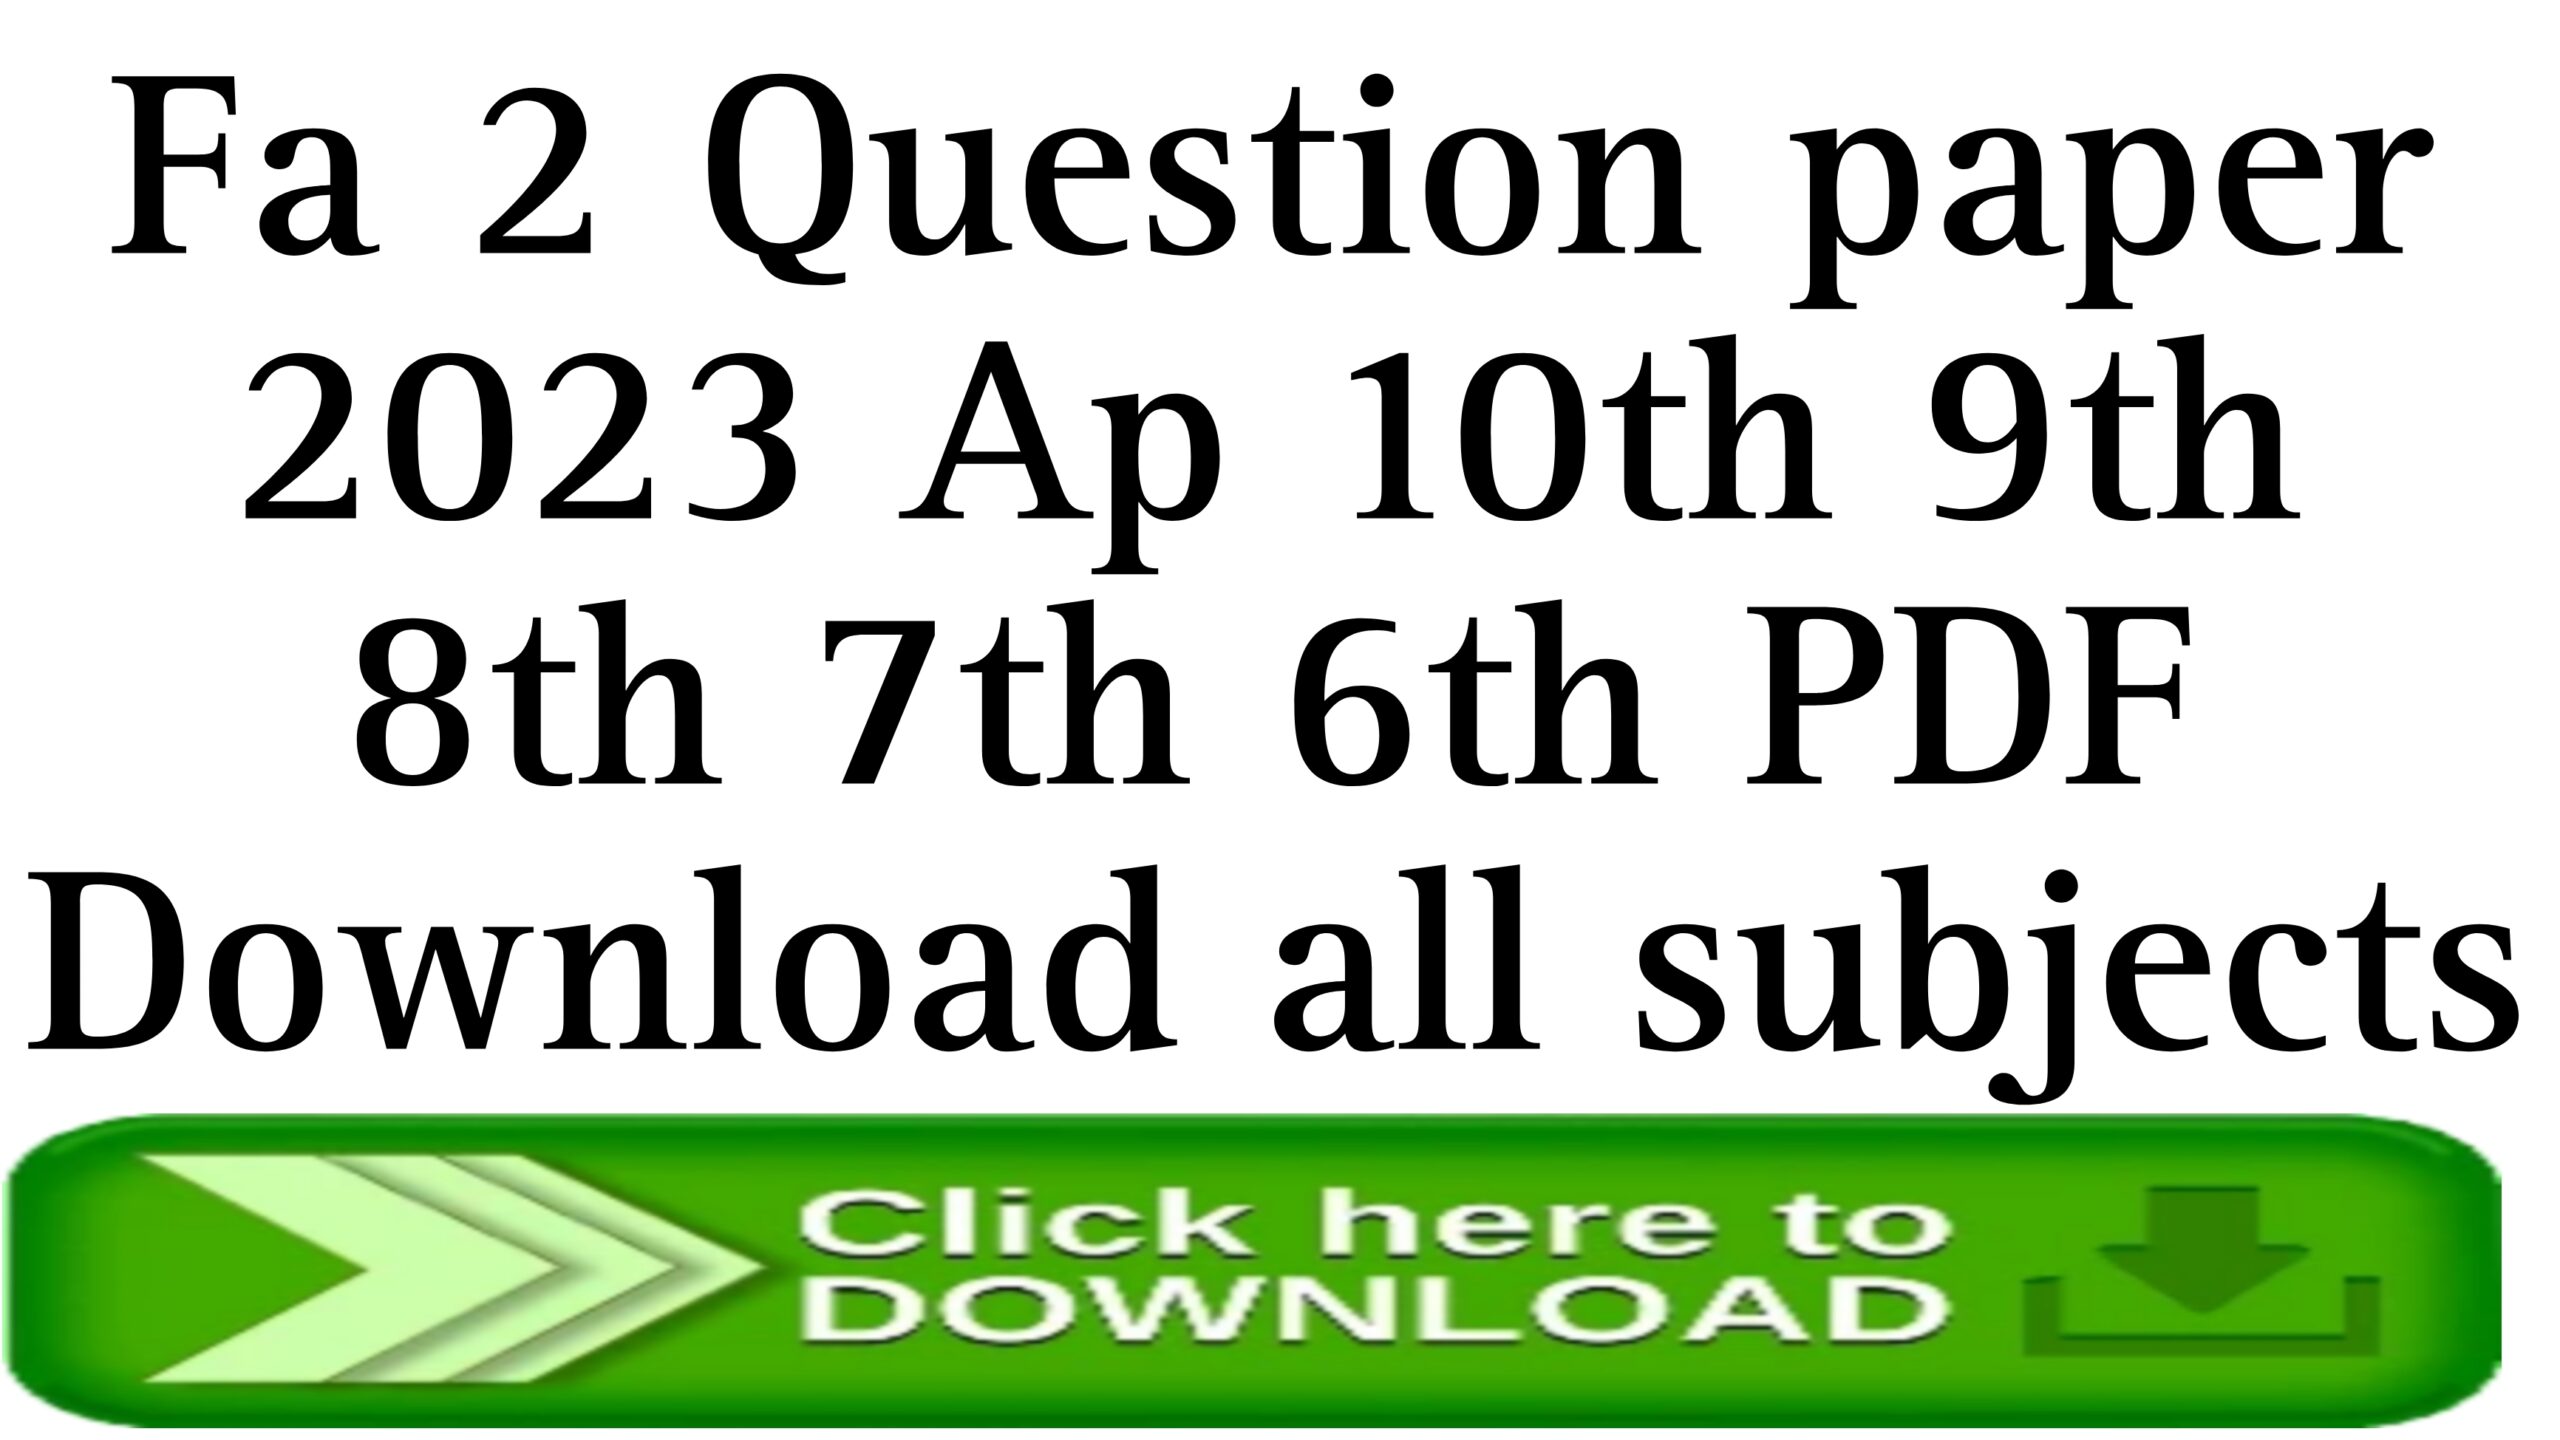 Fa 2 question paper 2023 Class 10th 9th 8th 7th 6th